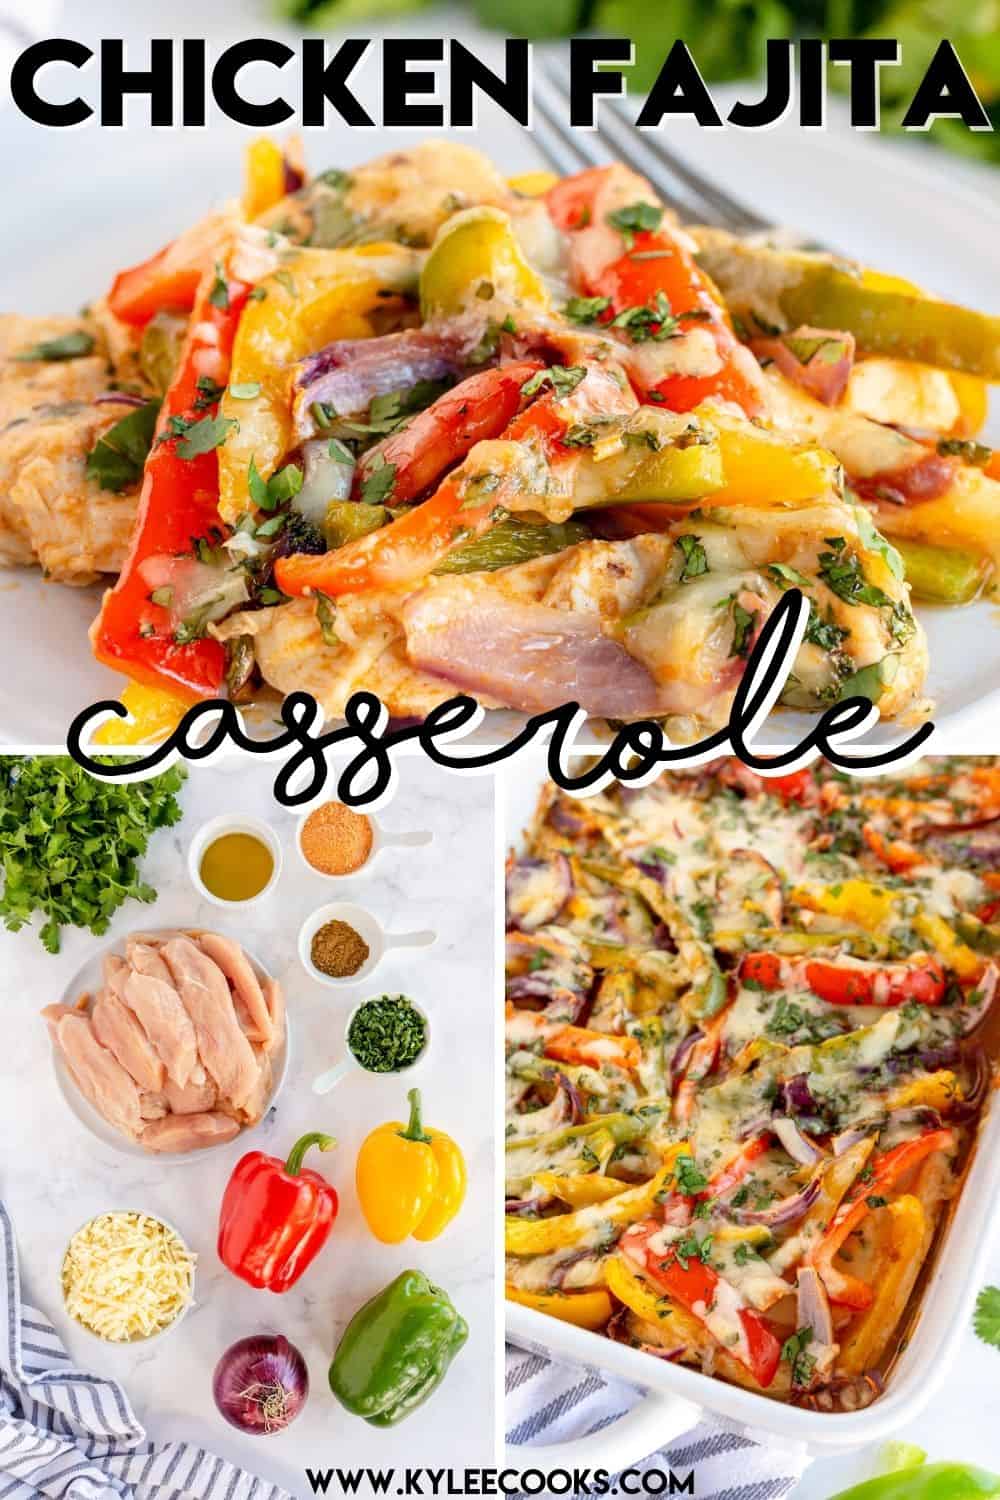 Chicken Fajita Casserole with recipe name overlaid in text